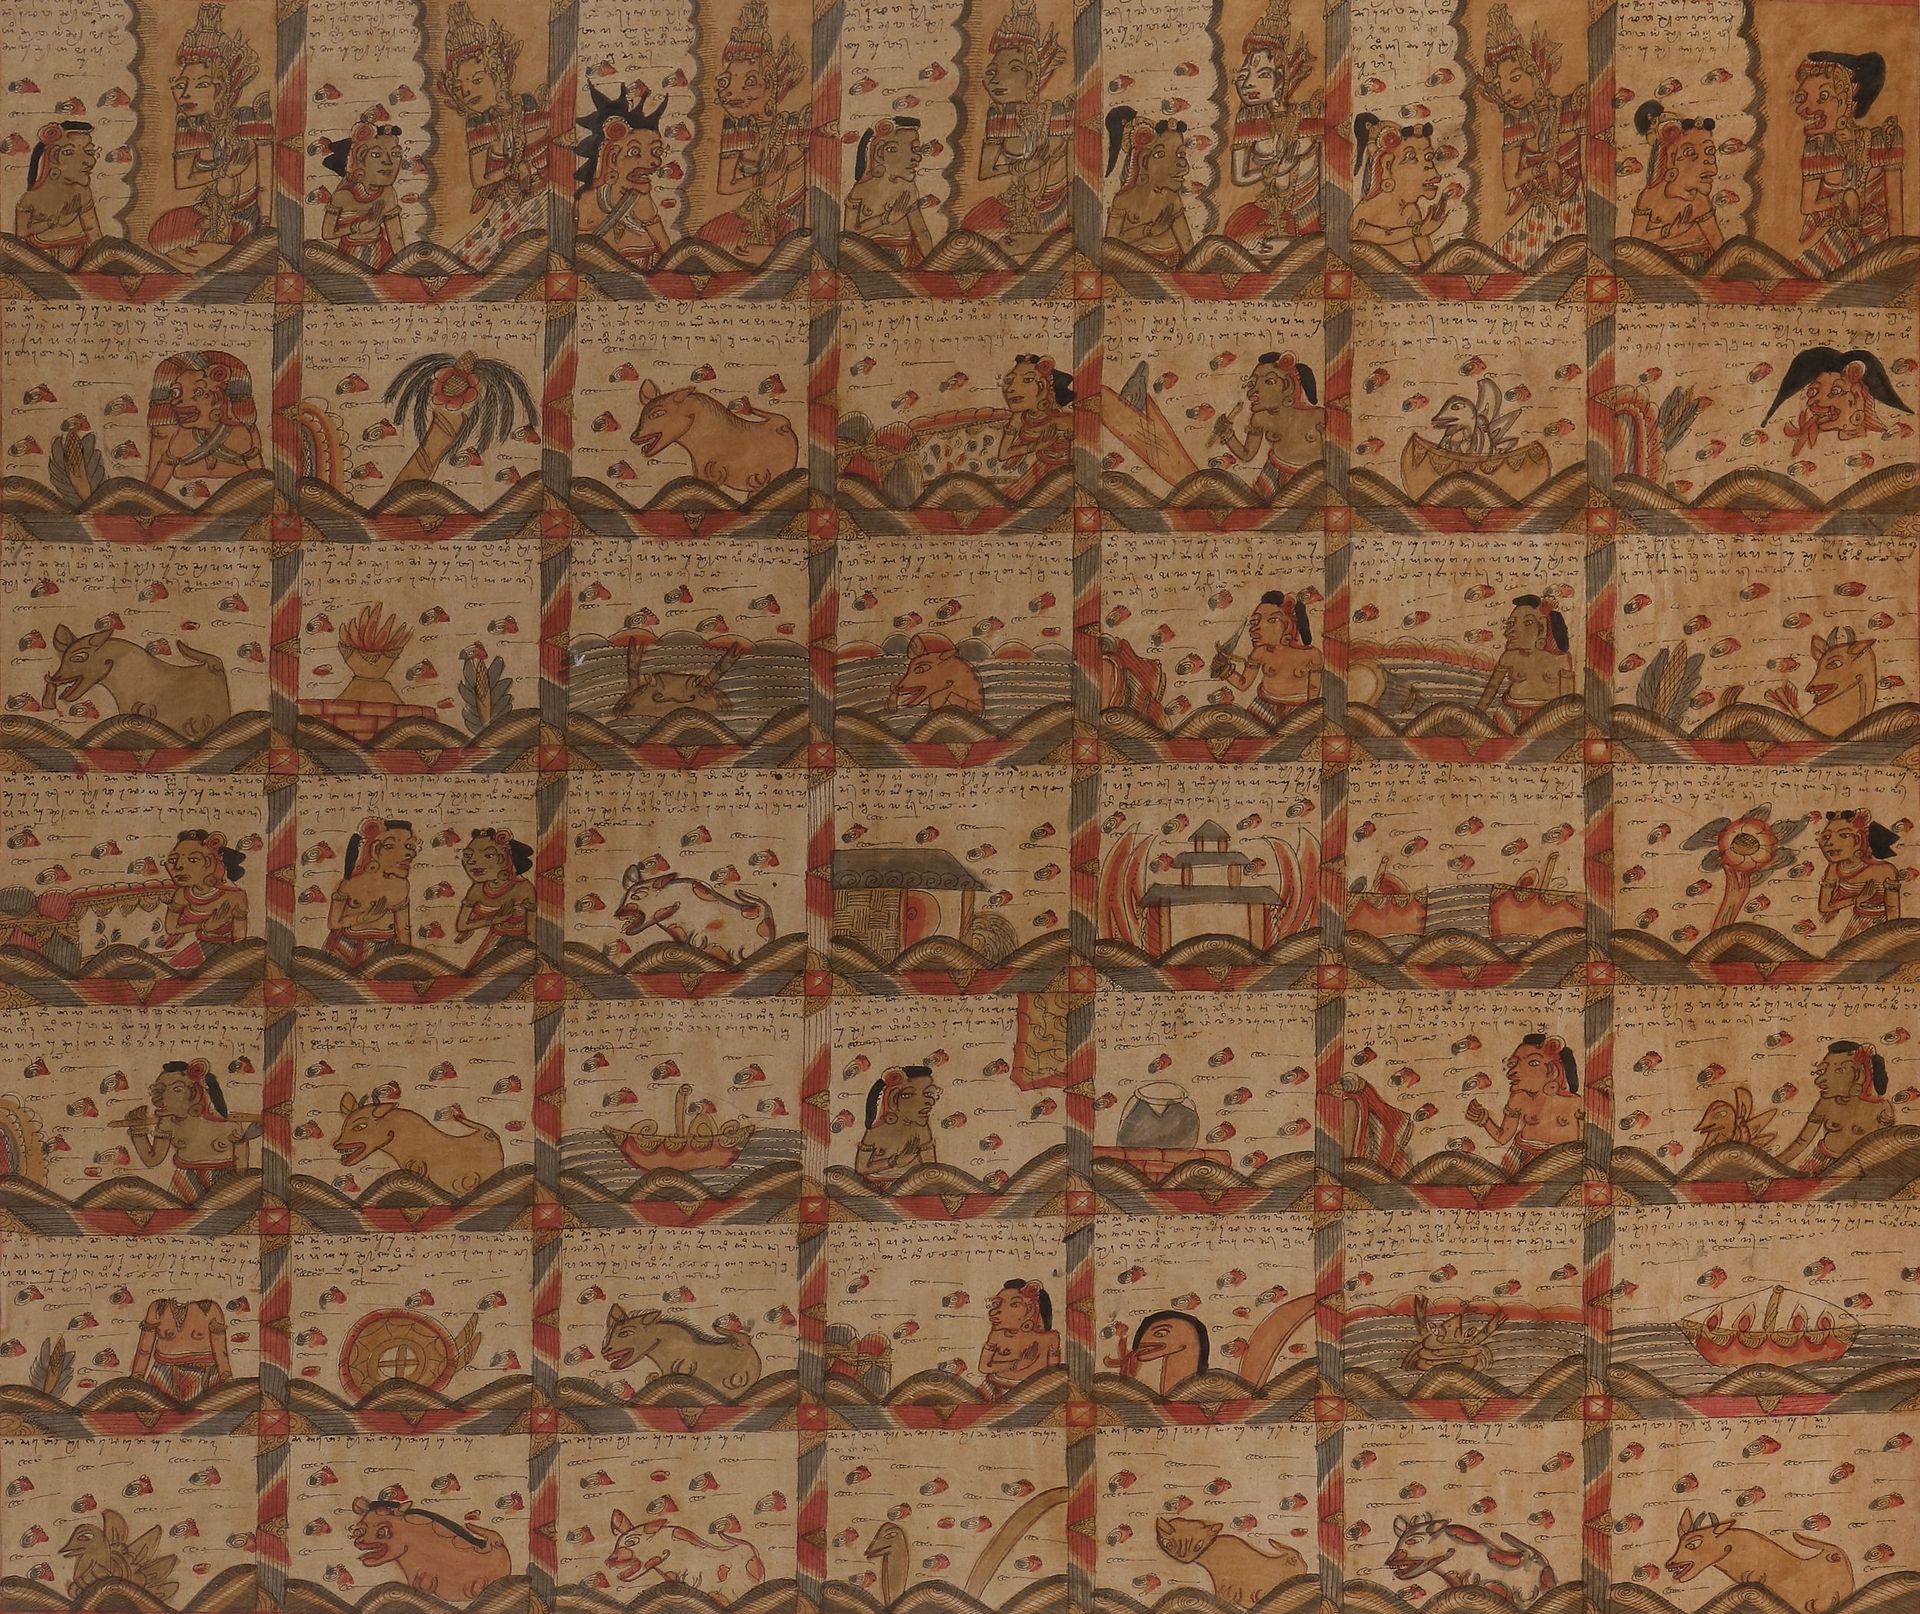 Null Palelintangan (calendrier astrologique), Bali, XXe siècle
Peinture sur text&hellip;